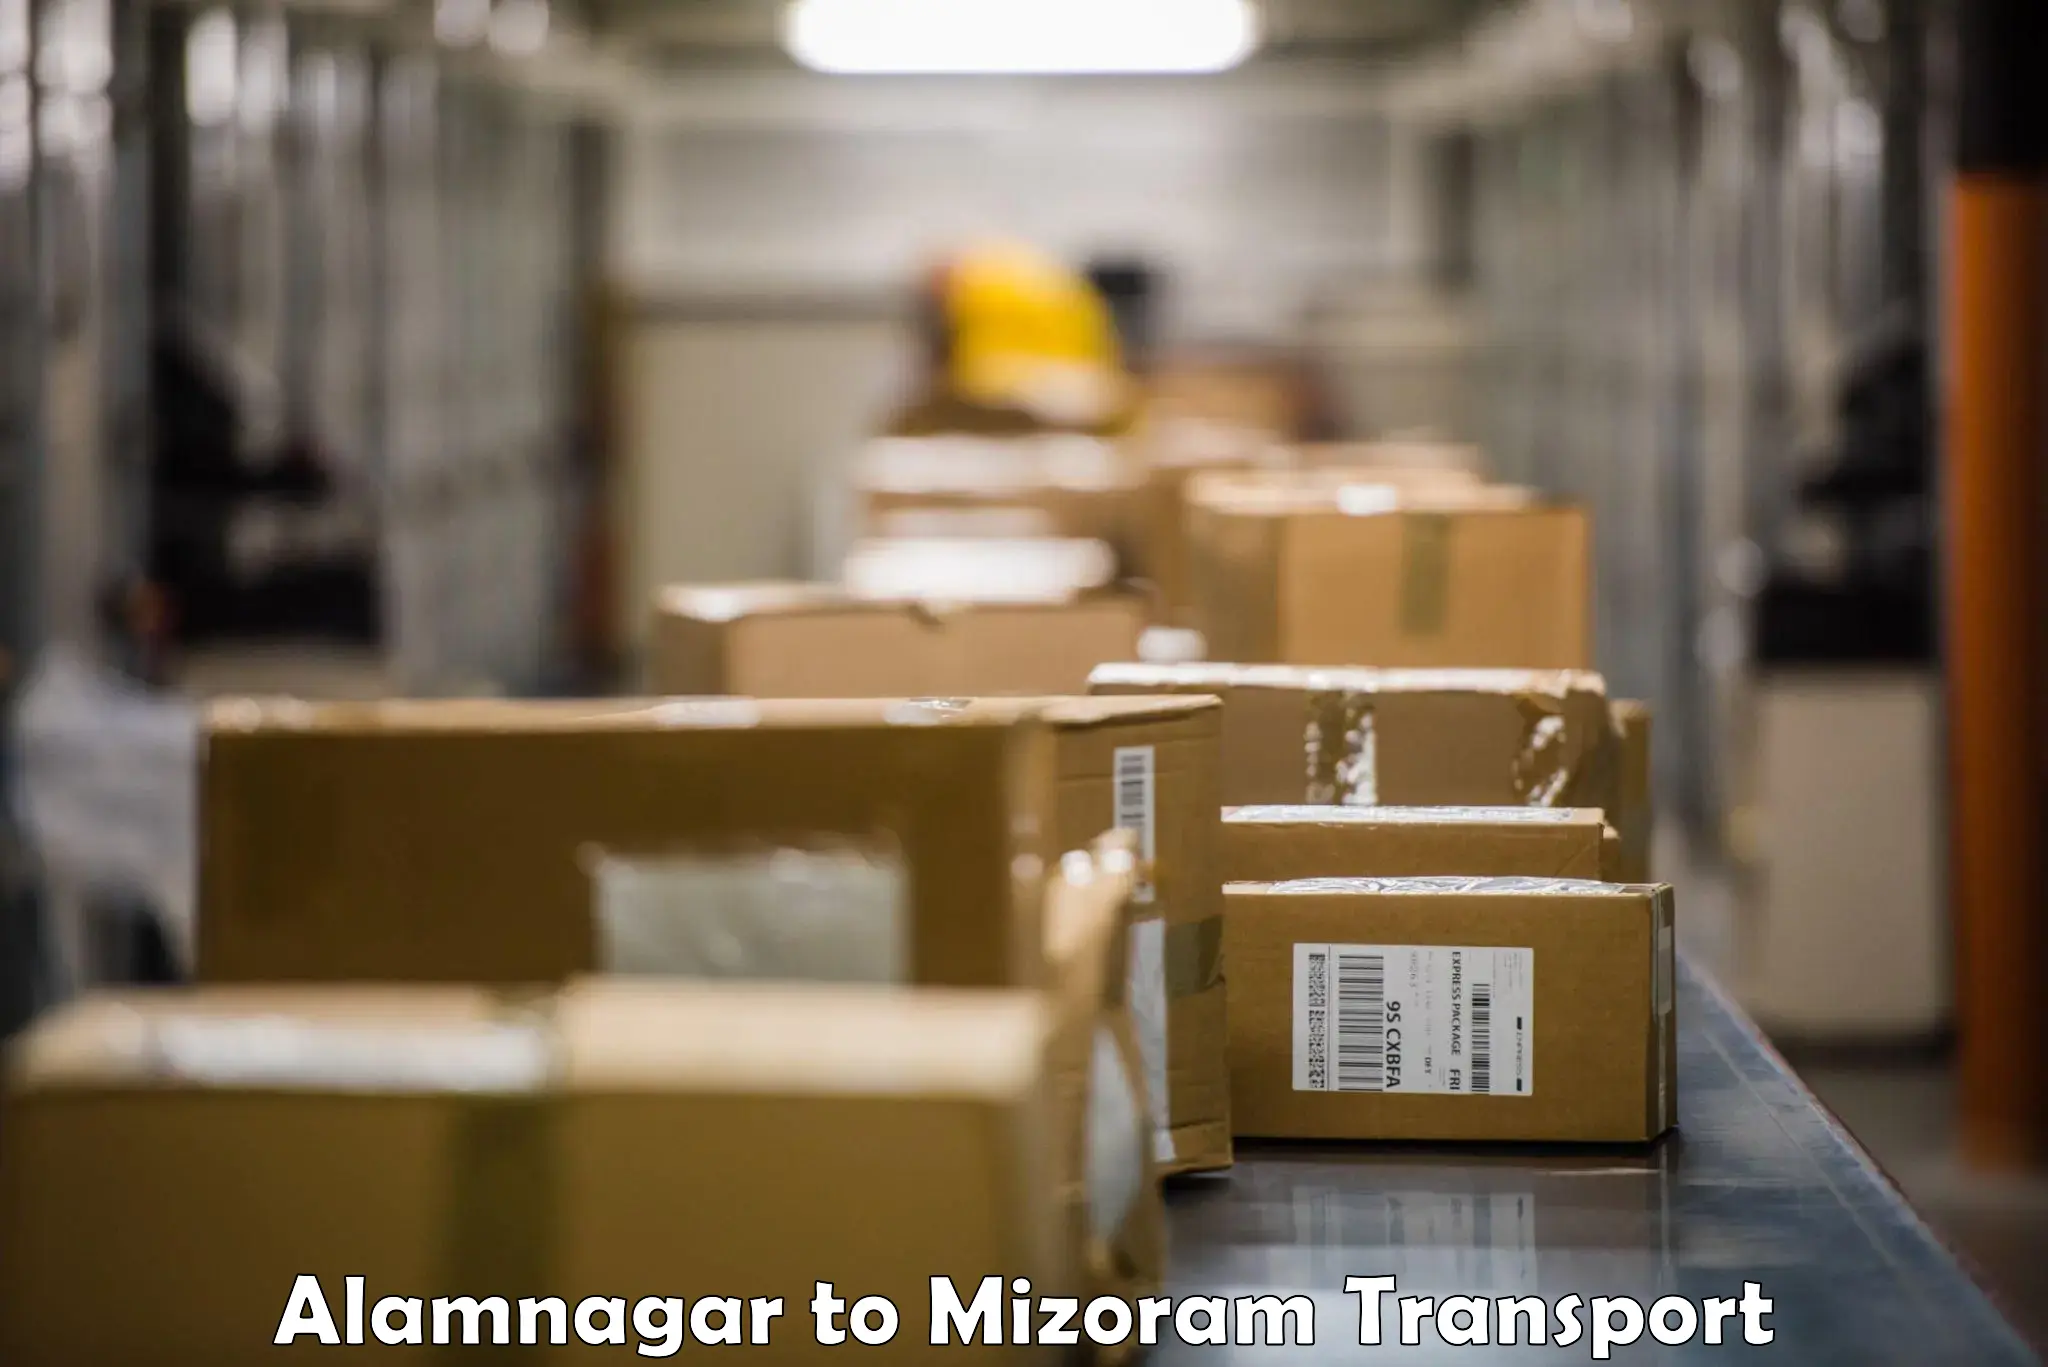 Lorry transport service Alamnagar to Mizoram